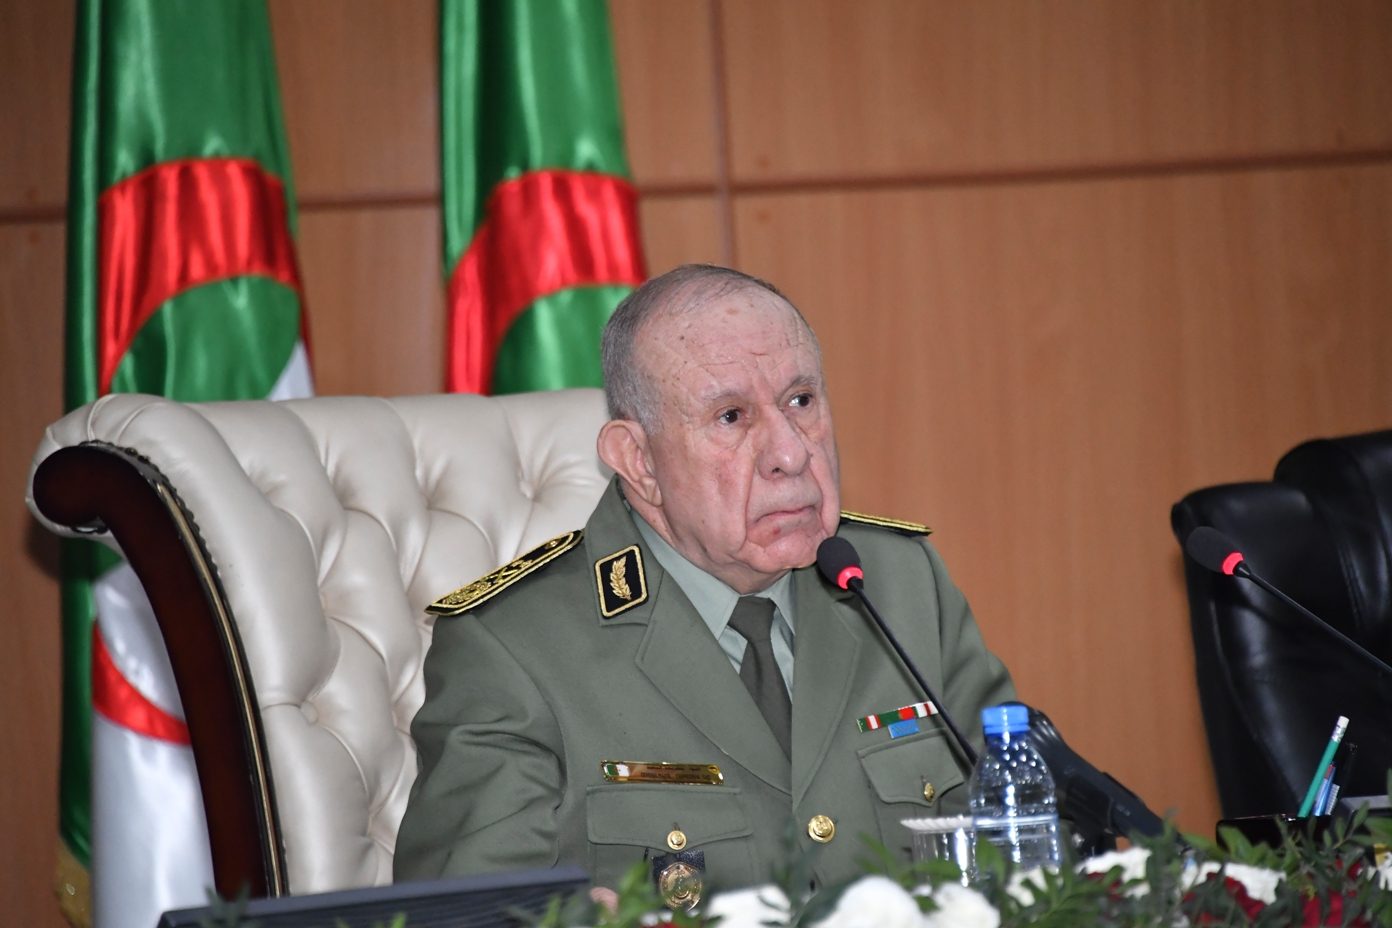 موقع إعلامي جزائري: نقل الجنرال شنقريحة على وجه السرعة الى اسبانيا للعلاج من مضاعفات سرطان بروستات والتبول اللاإرادي